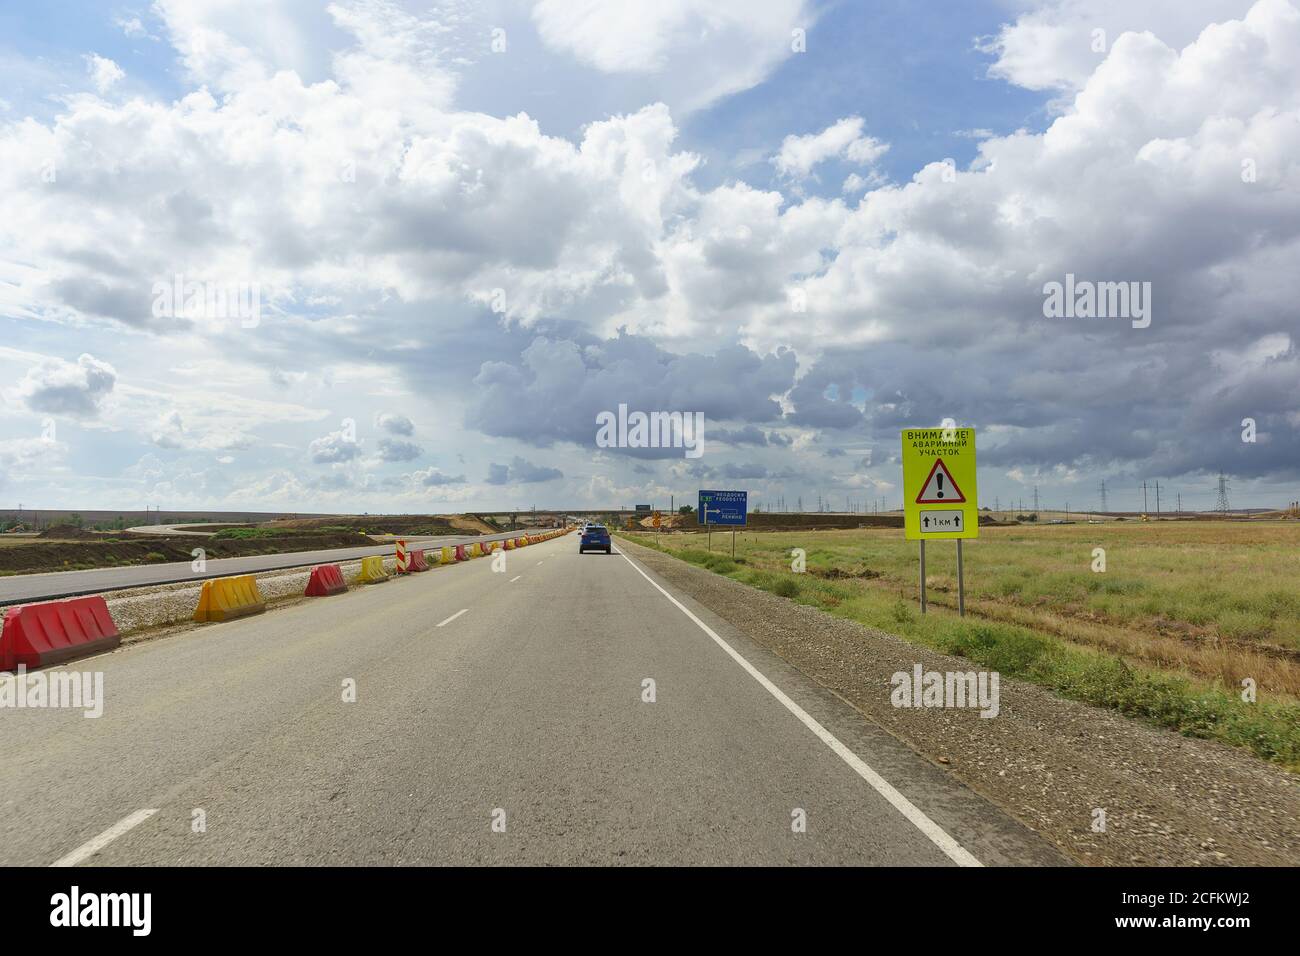 Autoroute Tavrida, Crimée, Russie-septembre 07, 2018: Avertissement de route avec l'inscription en russe attention! Site d'urgence. Pointeur vers les inters Banque D'Images